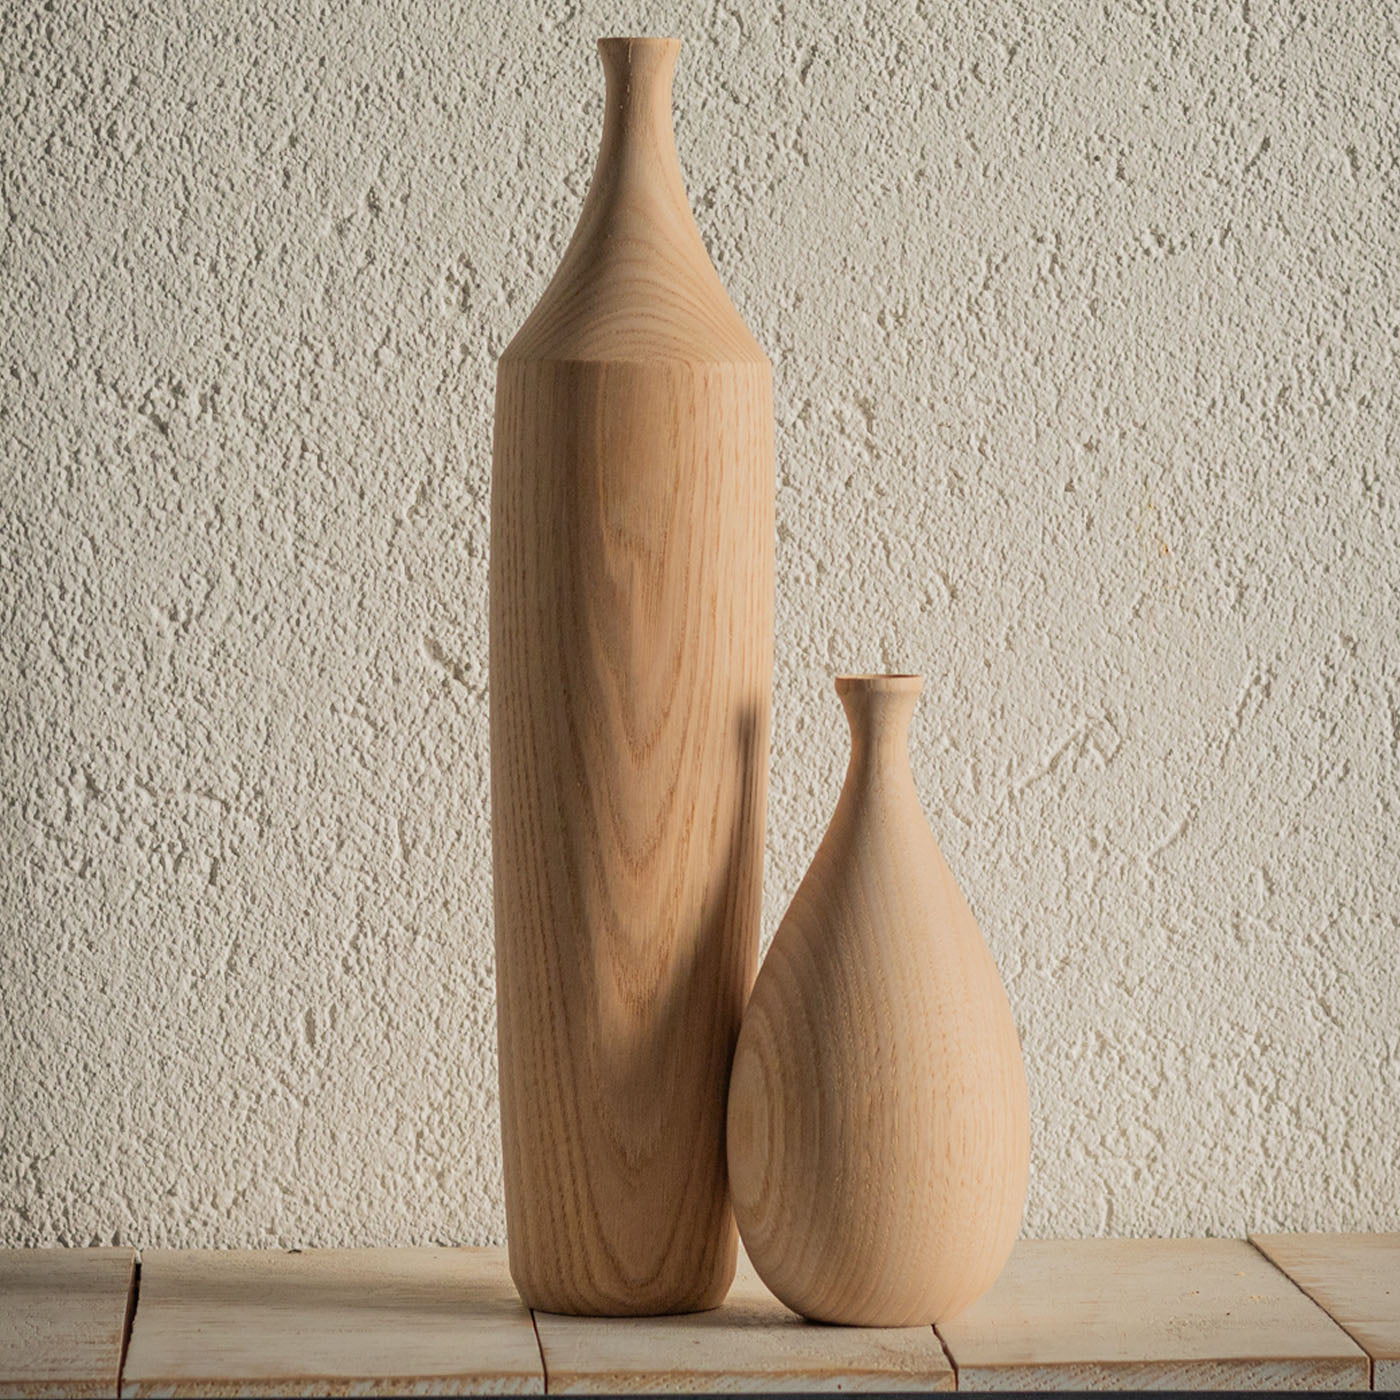 Set de bouteilles sculpturales en bois #1 - Vue alternative 1